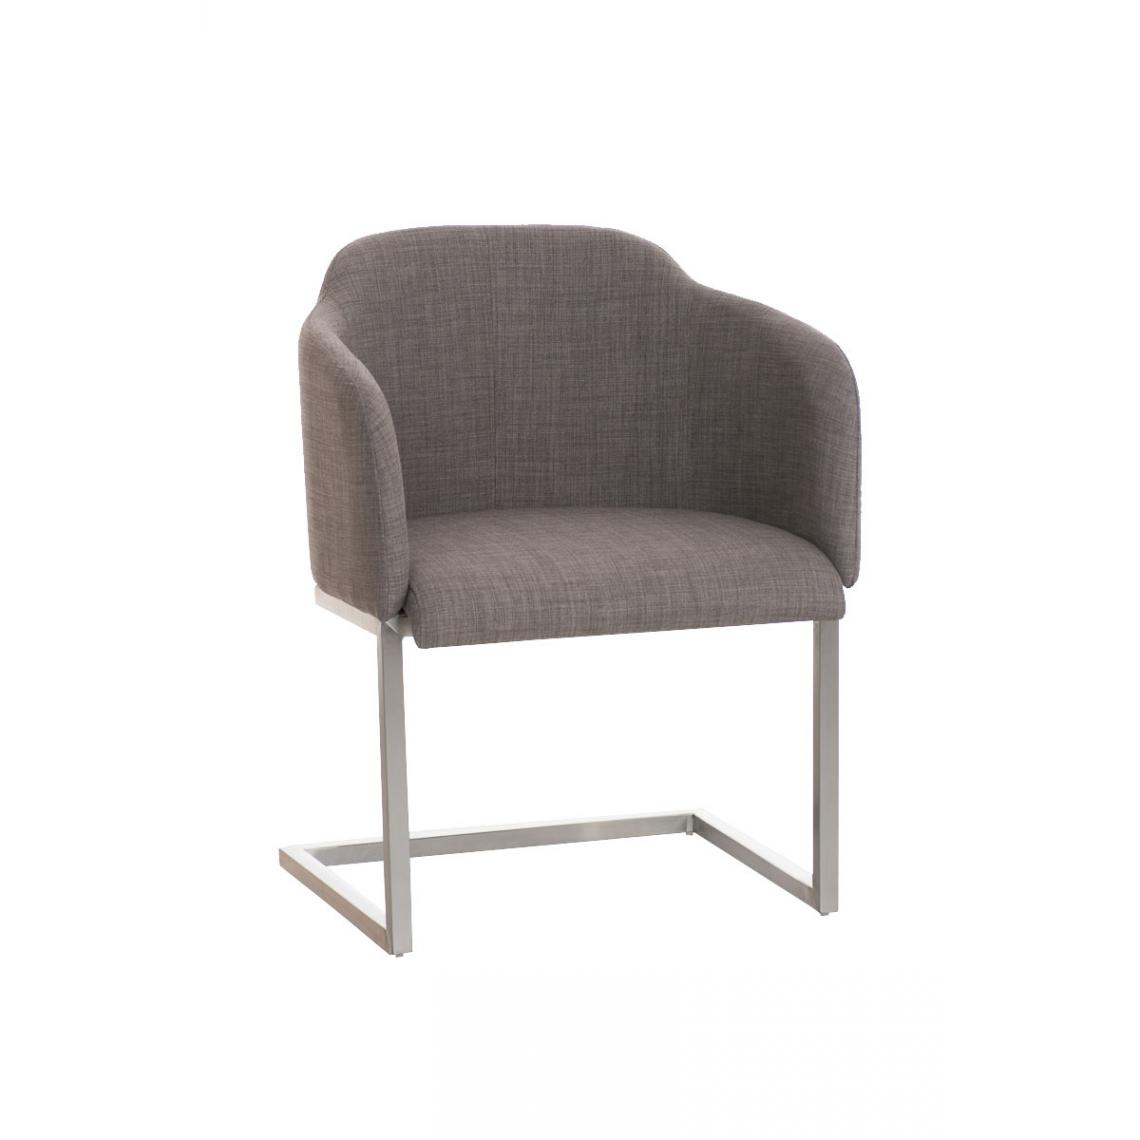 Icaverne - Splendide Chaise visiteur en tissu reference Asuncion couleur gris - Chaises